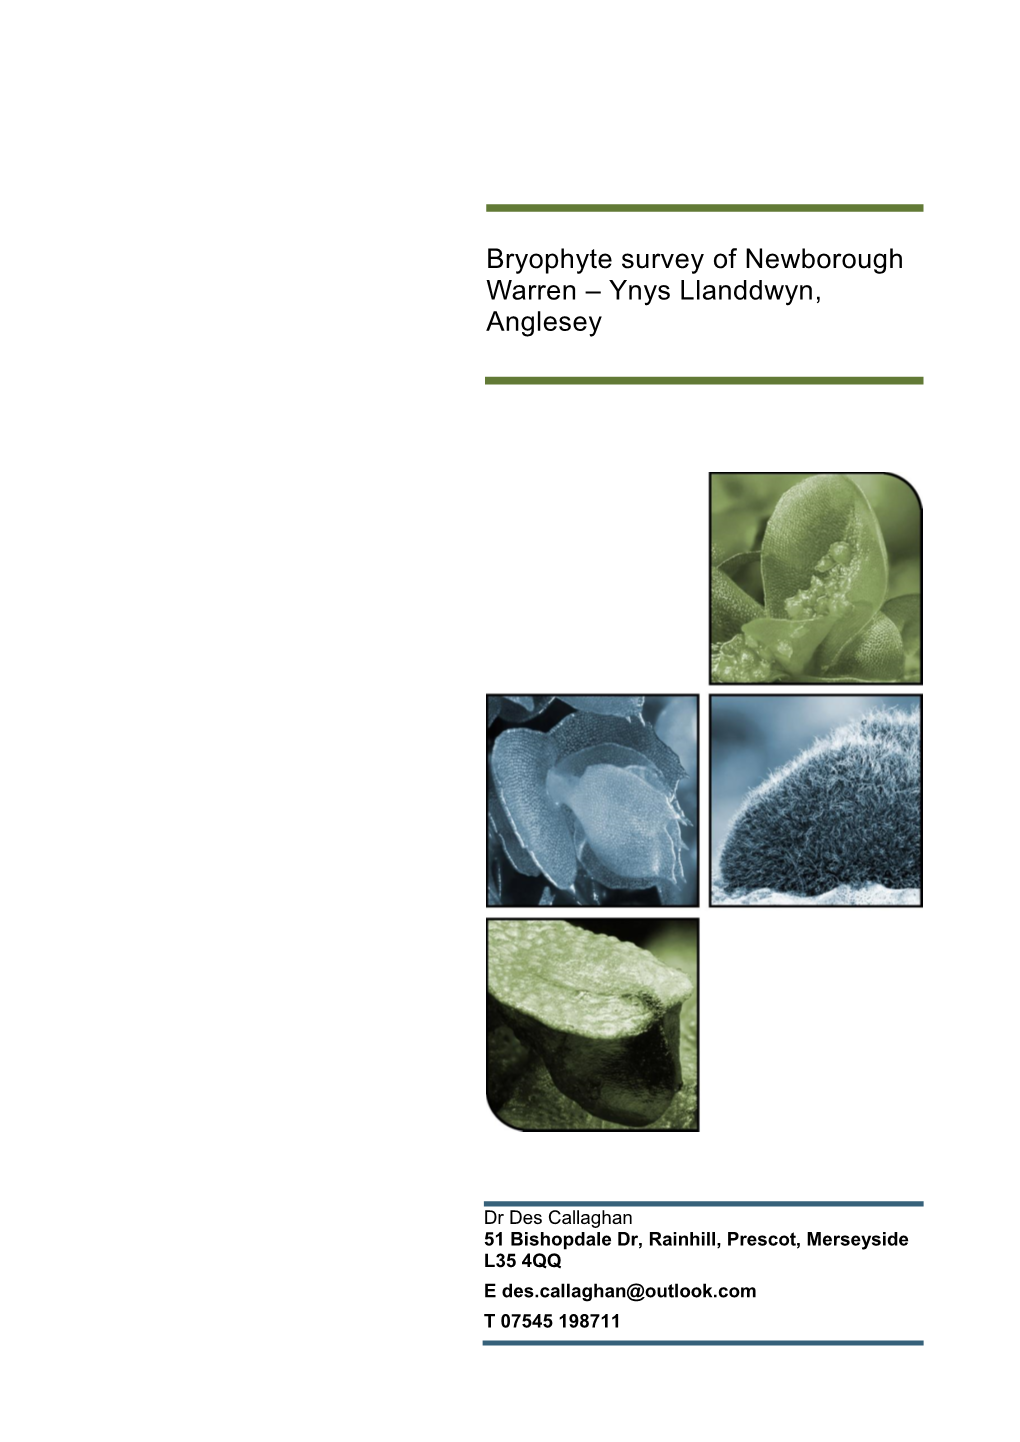 Bryophyte Survey of Newborough Warren – Ynys Llanddwyn, Anglesey